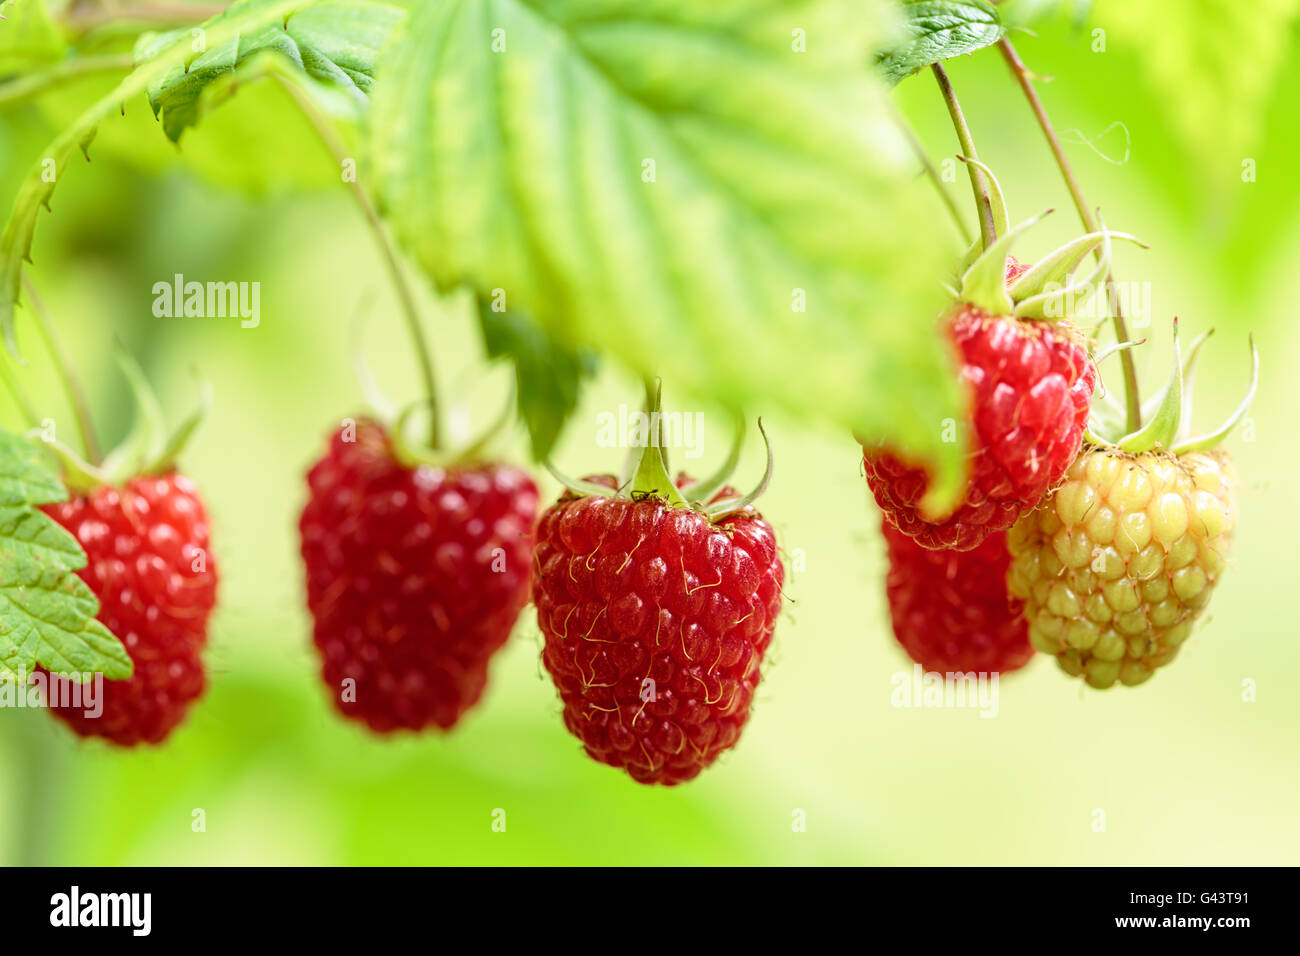 Raspberry plant Stock Photo